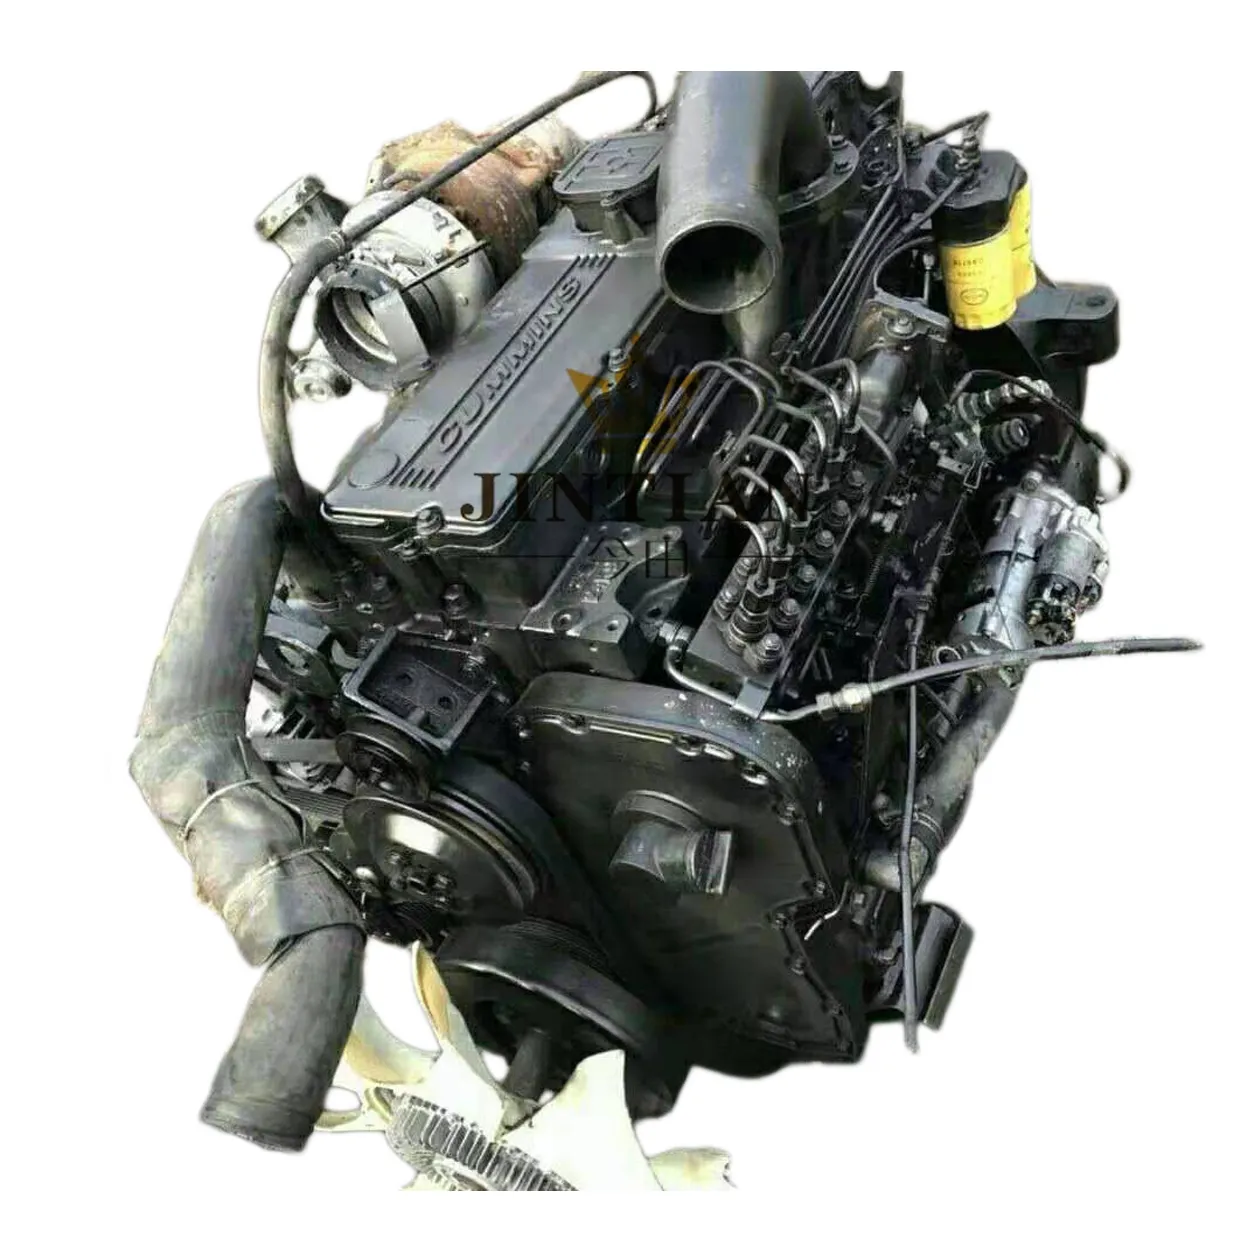 Восстановленный б/у двигатель 6 л, двигатель для дизельного грузовика л, двигатель с высокой лошадиной мощностью 375HP, распродажа